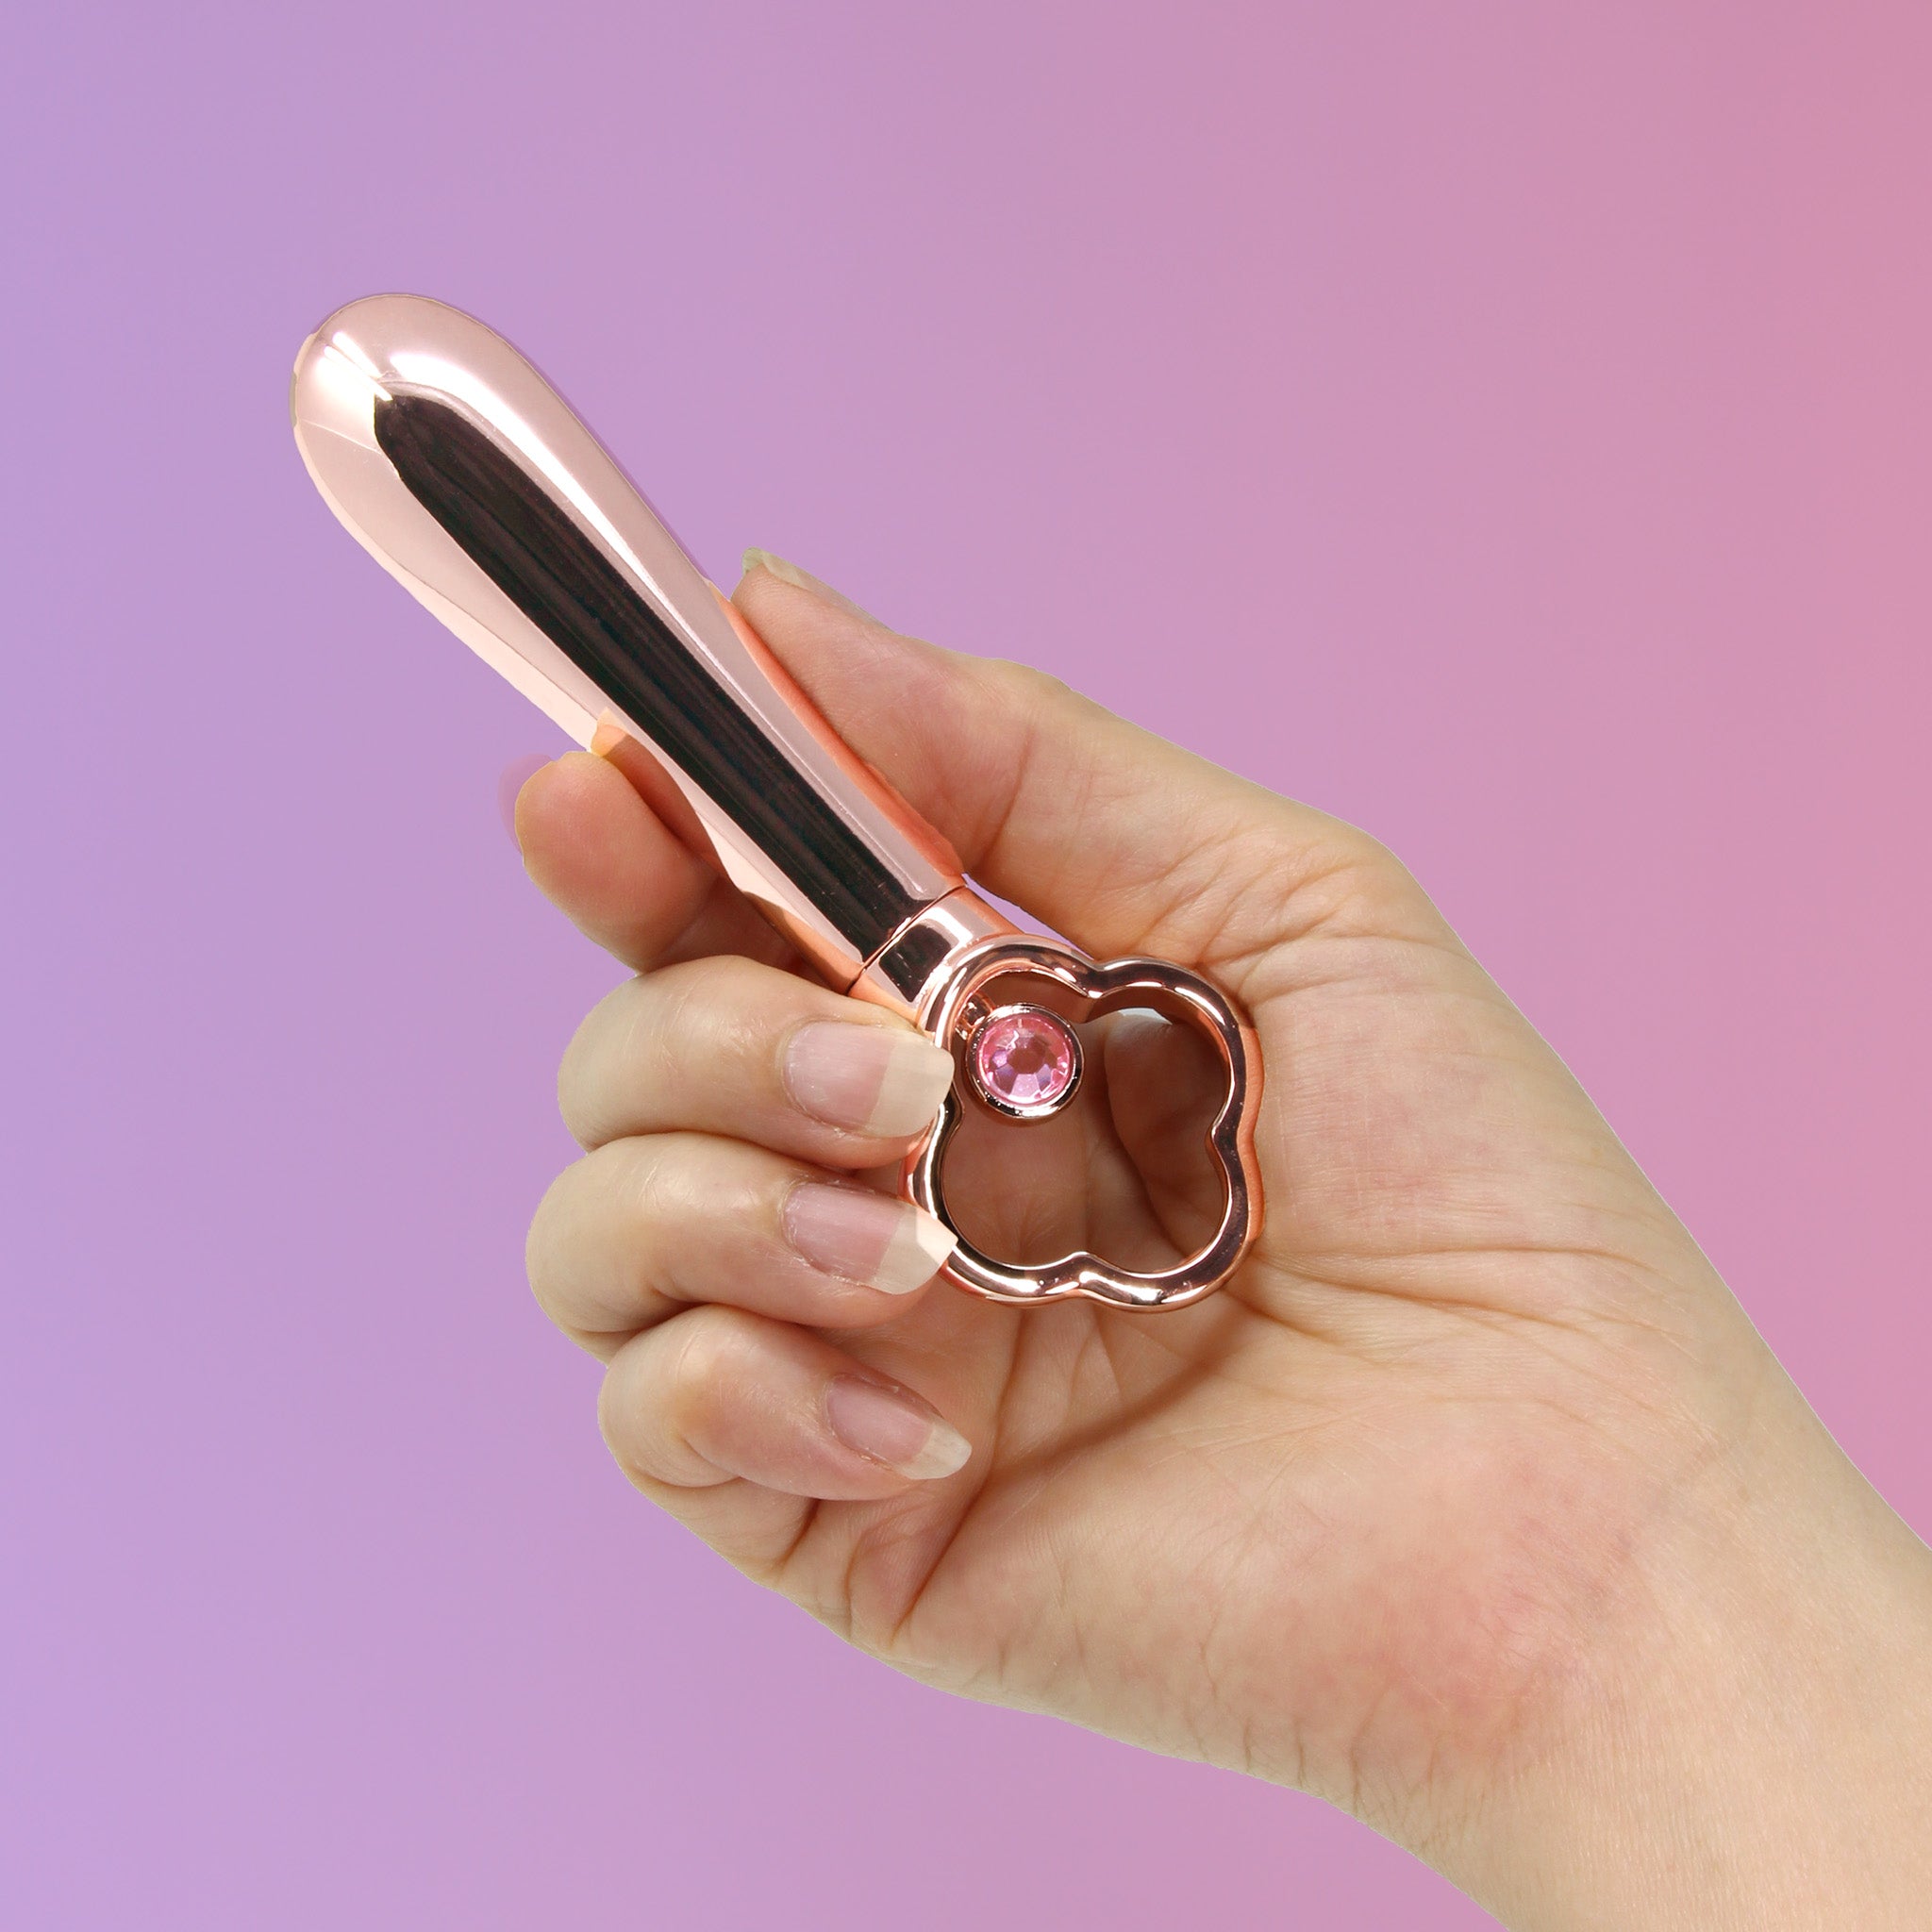 Gold Rechargeable Vibrating Bullet Vibrator Beginner Sex Toys for Women